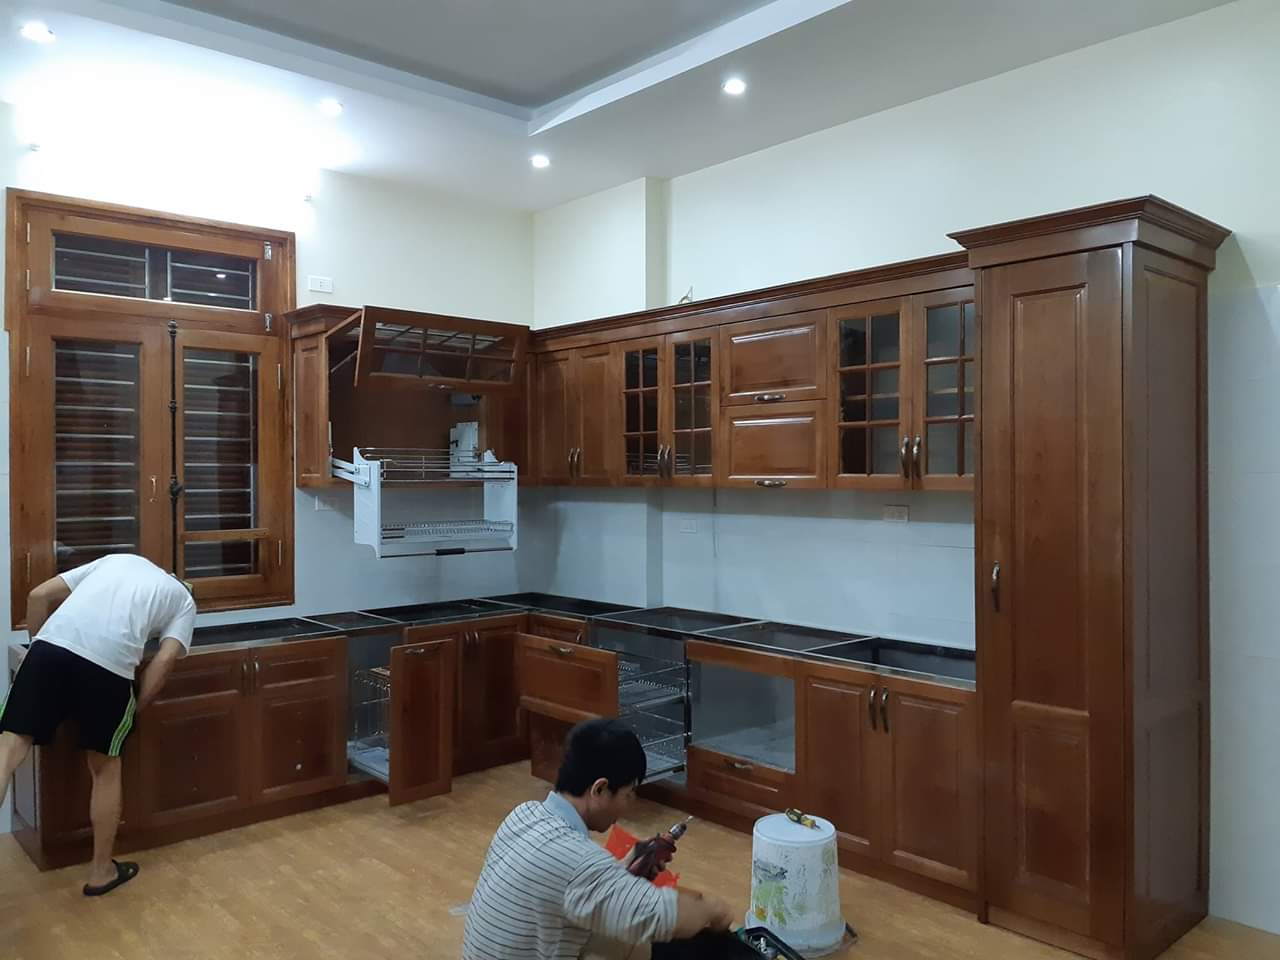 Tủ bếp gỗ xoan đào phun màu cánh gián đậm - ACADO thi công tủ bếp tại Tây Hồ - Hà Nội